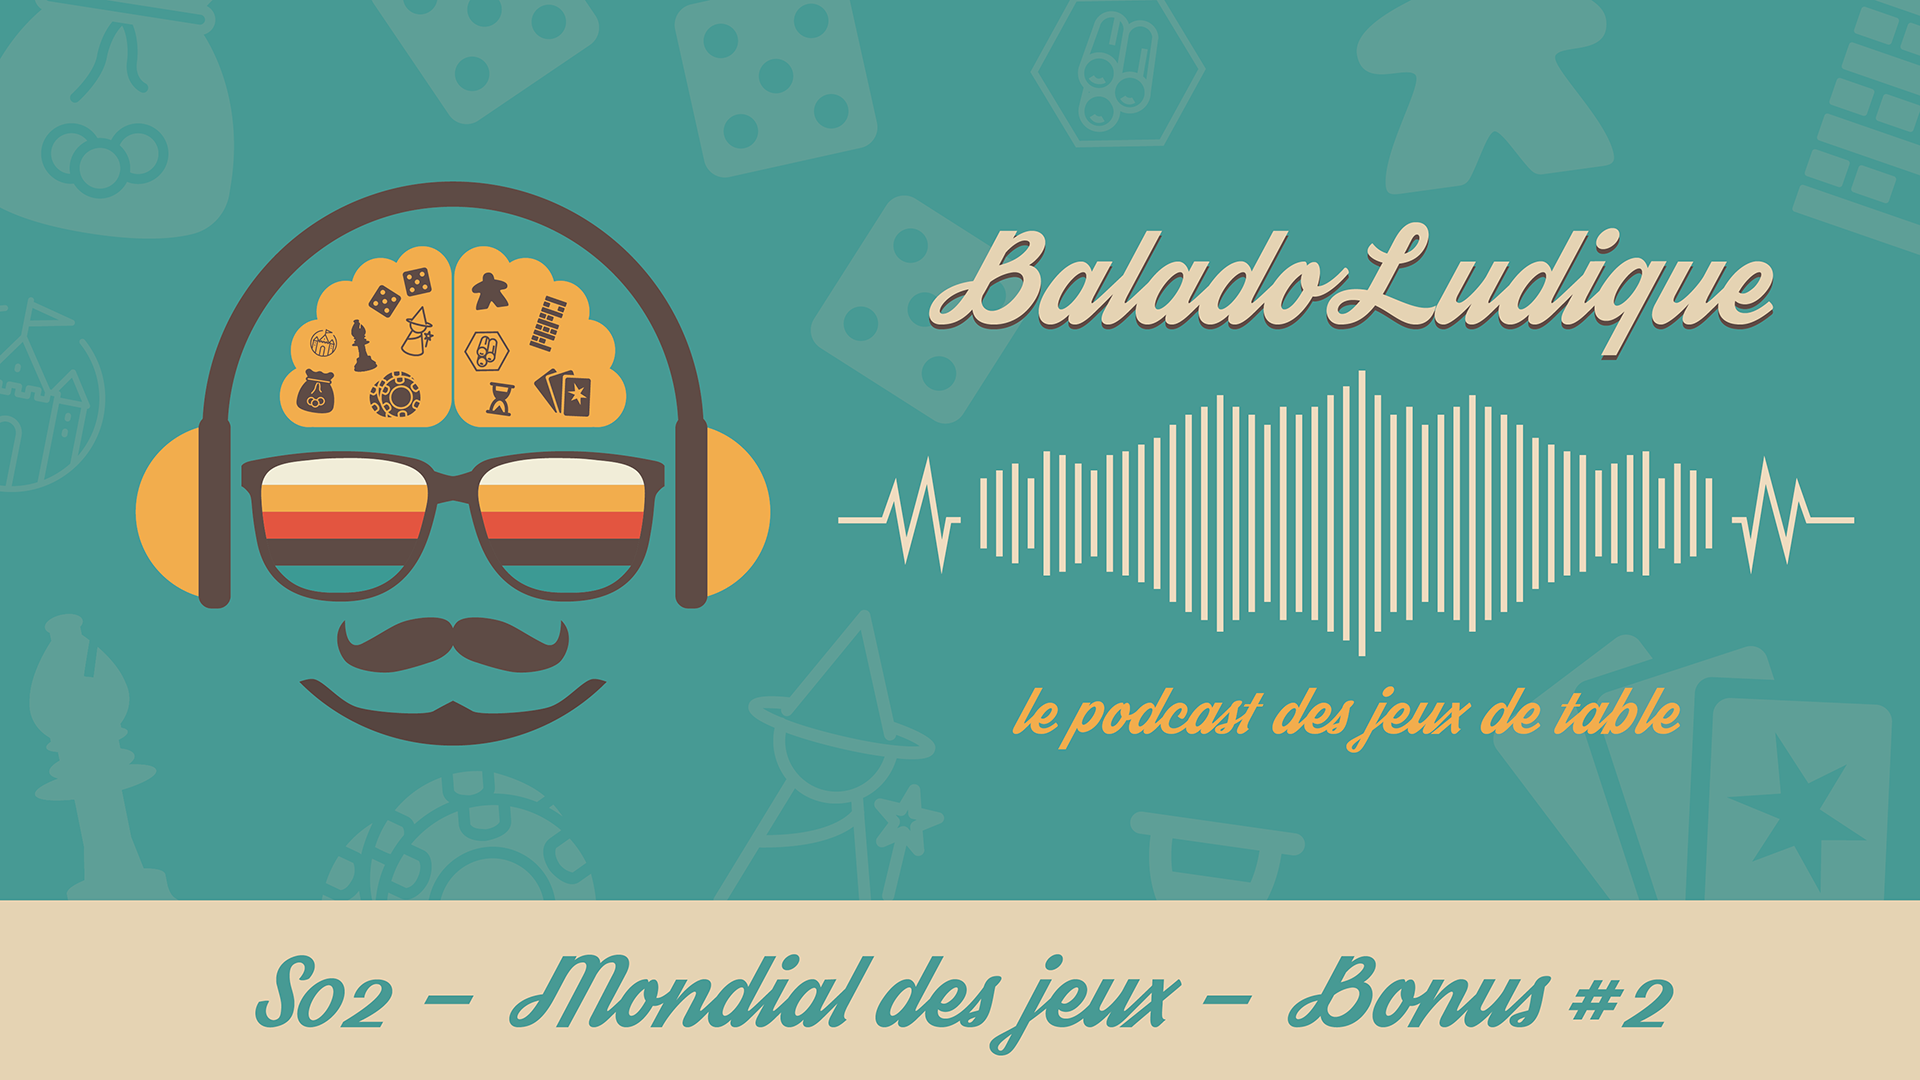 Mondial des jeux Loto-Québec - BaladoLudique - s02 Bonus2